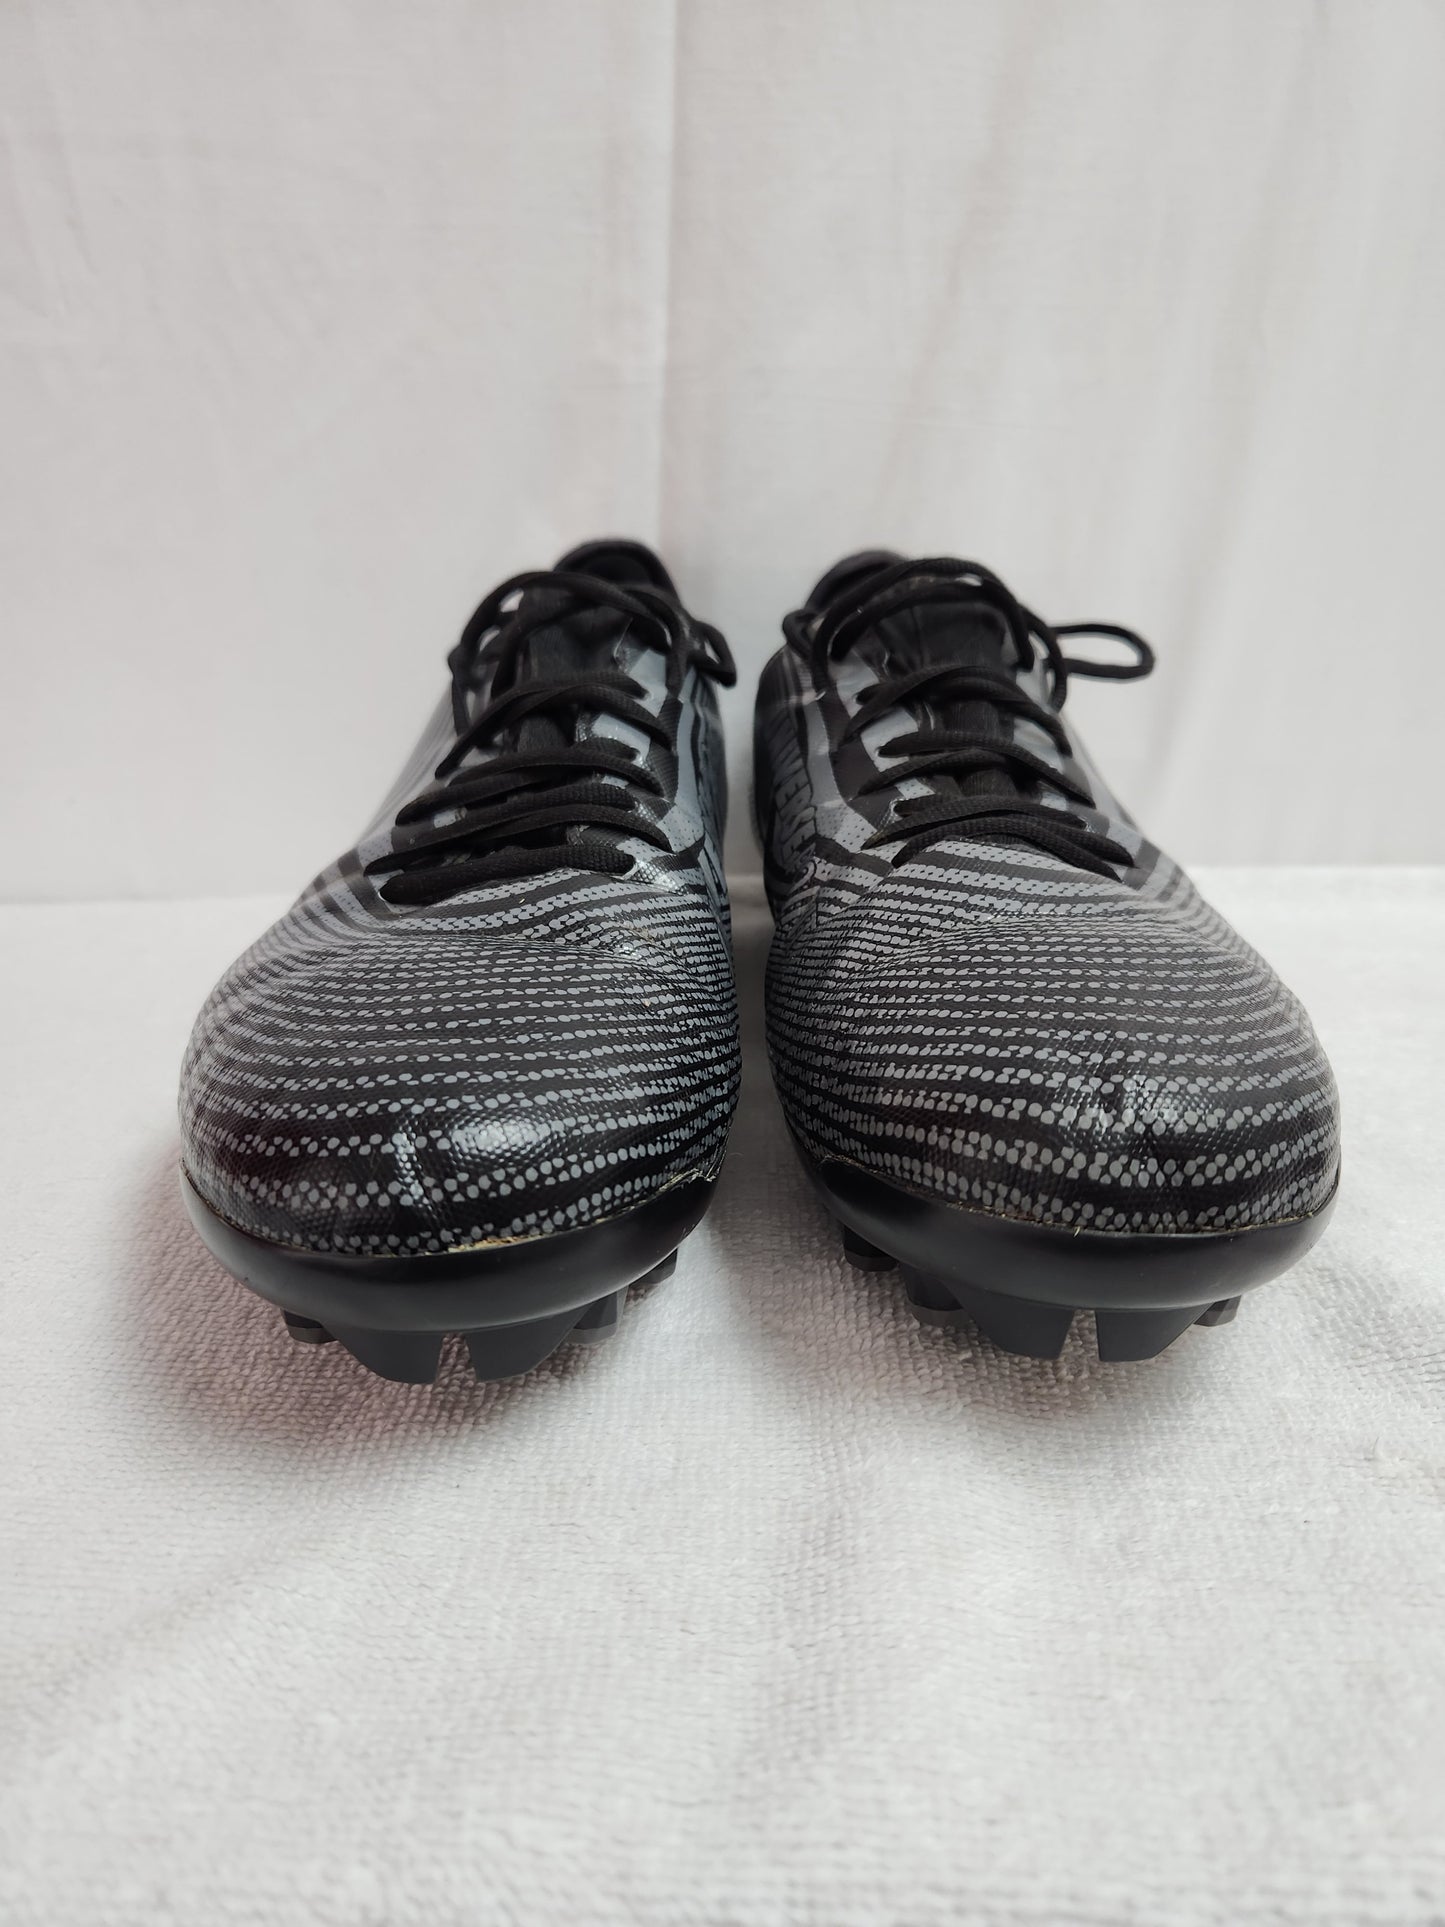 Rare Universe Point Men's Black Microfiber Ankle Cleats - Size: 13.5